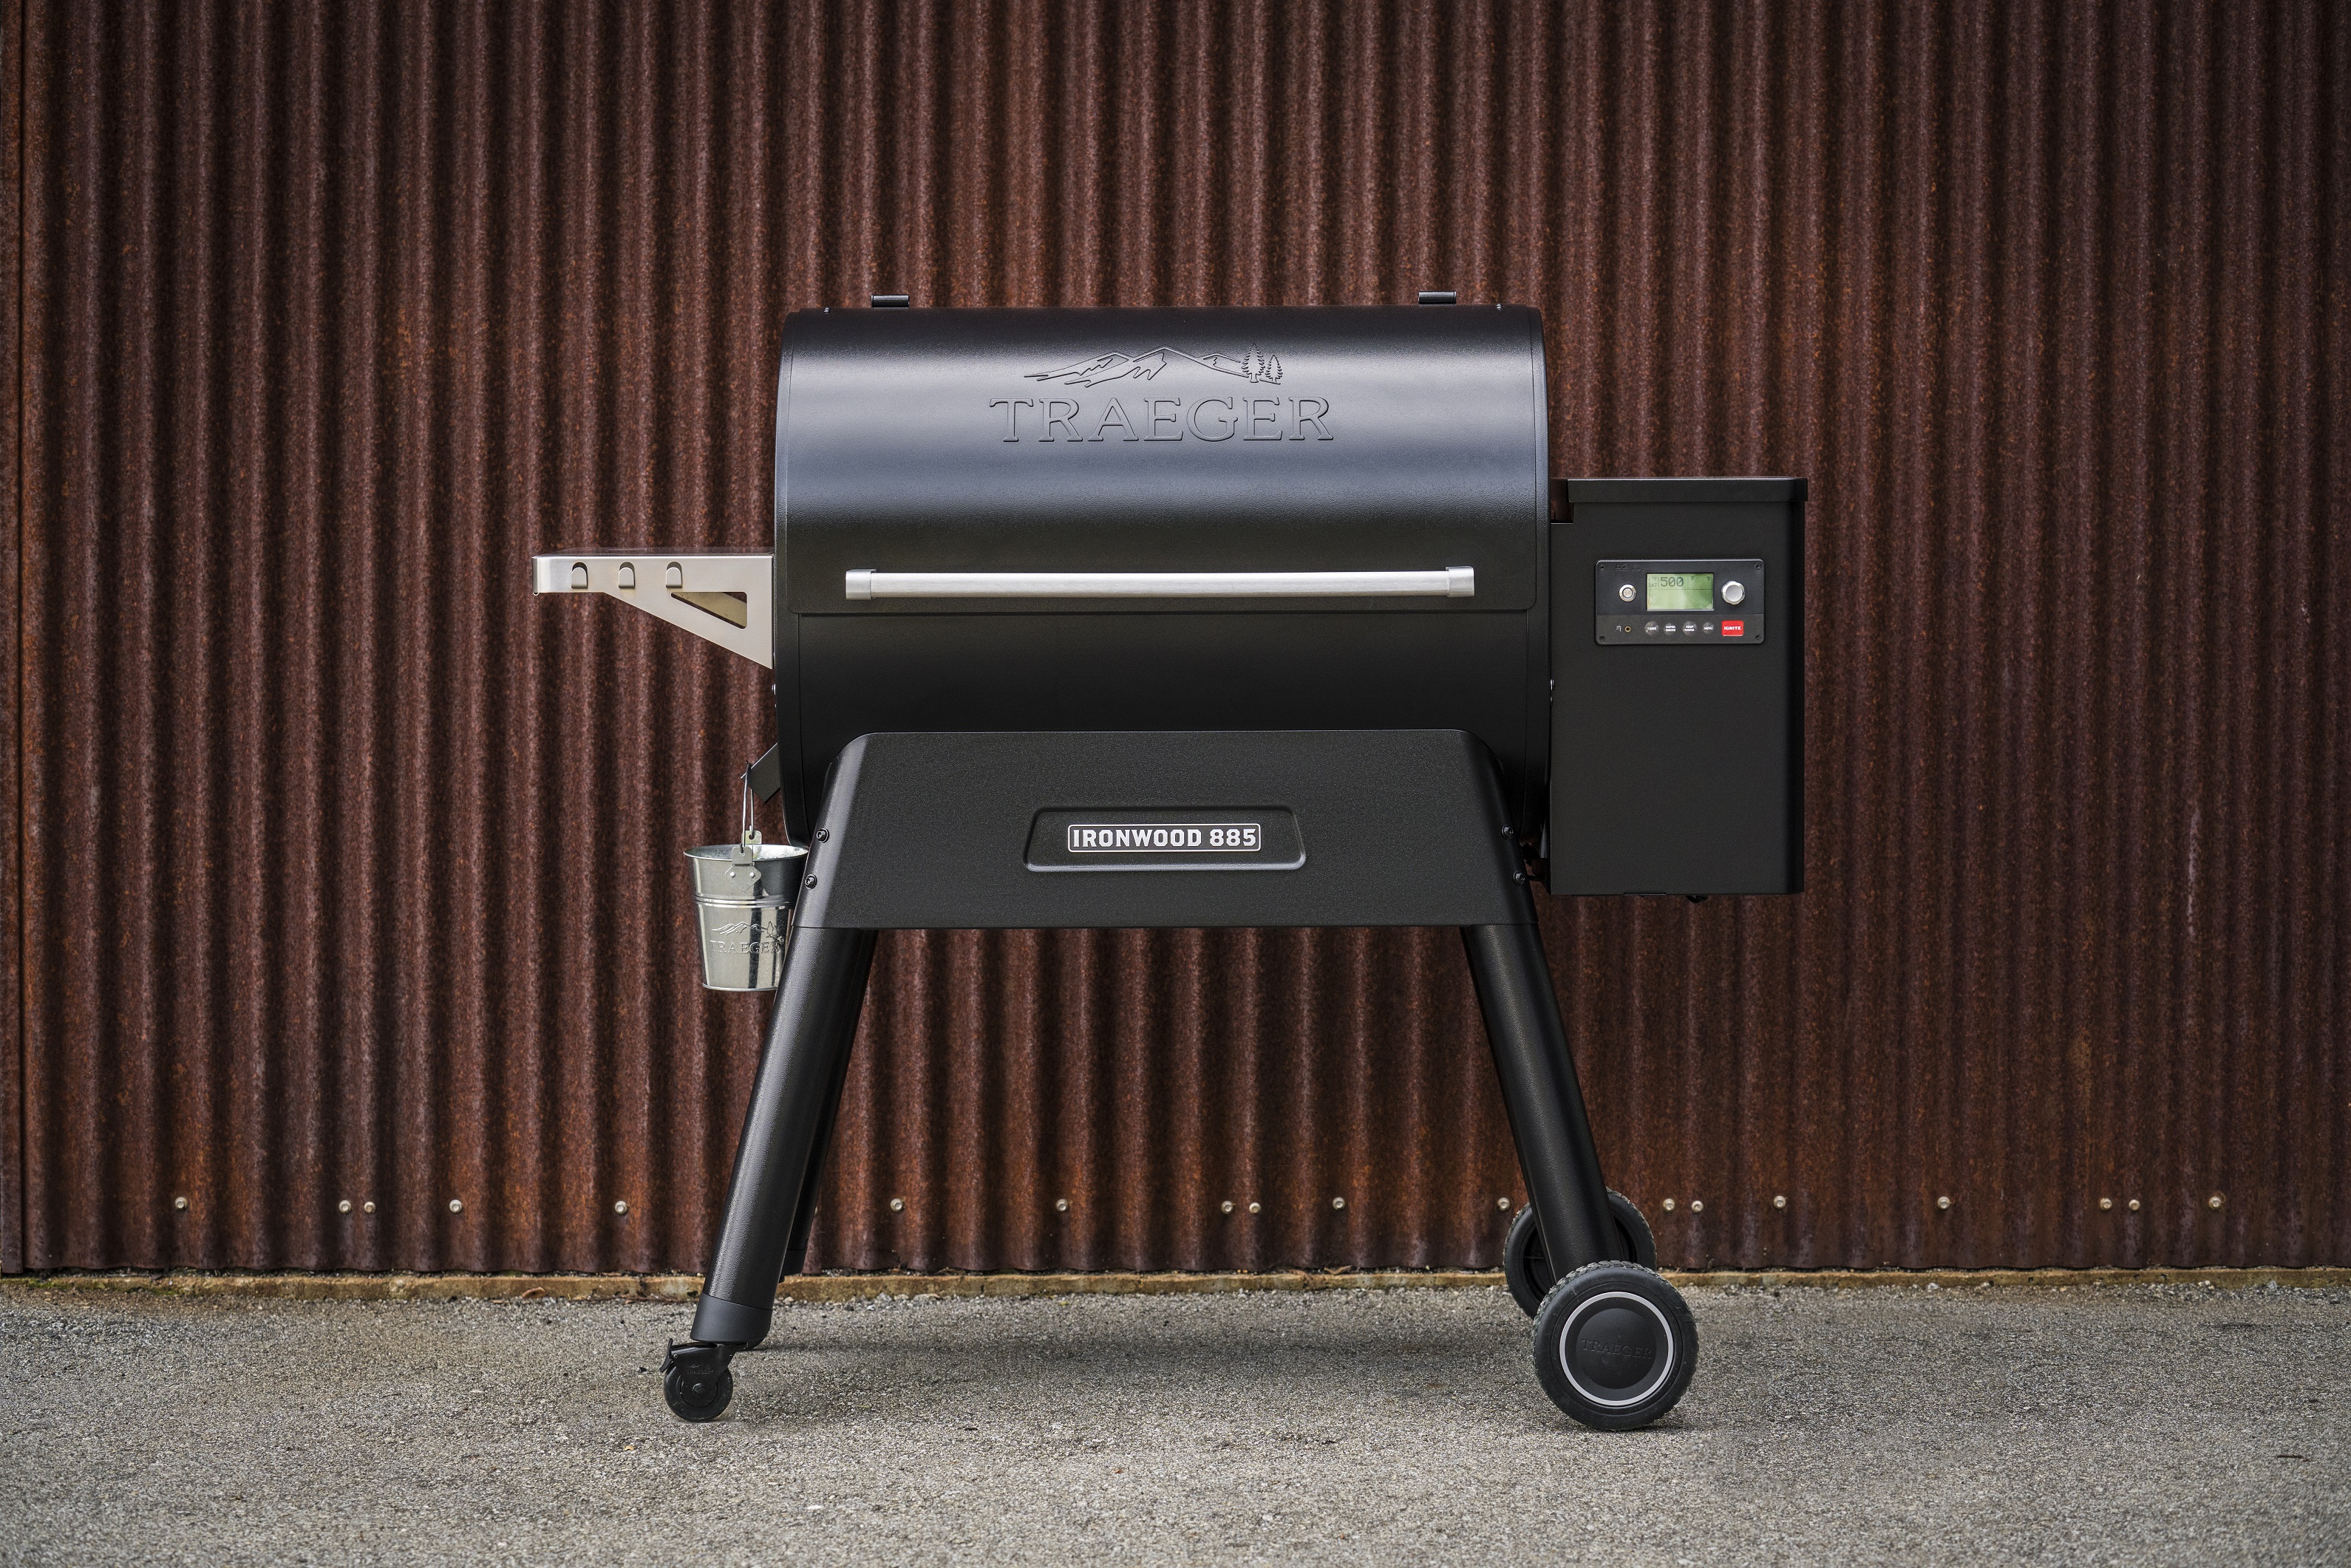 traeger 2019 new grills ironwood 885 lifestyle aptos007